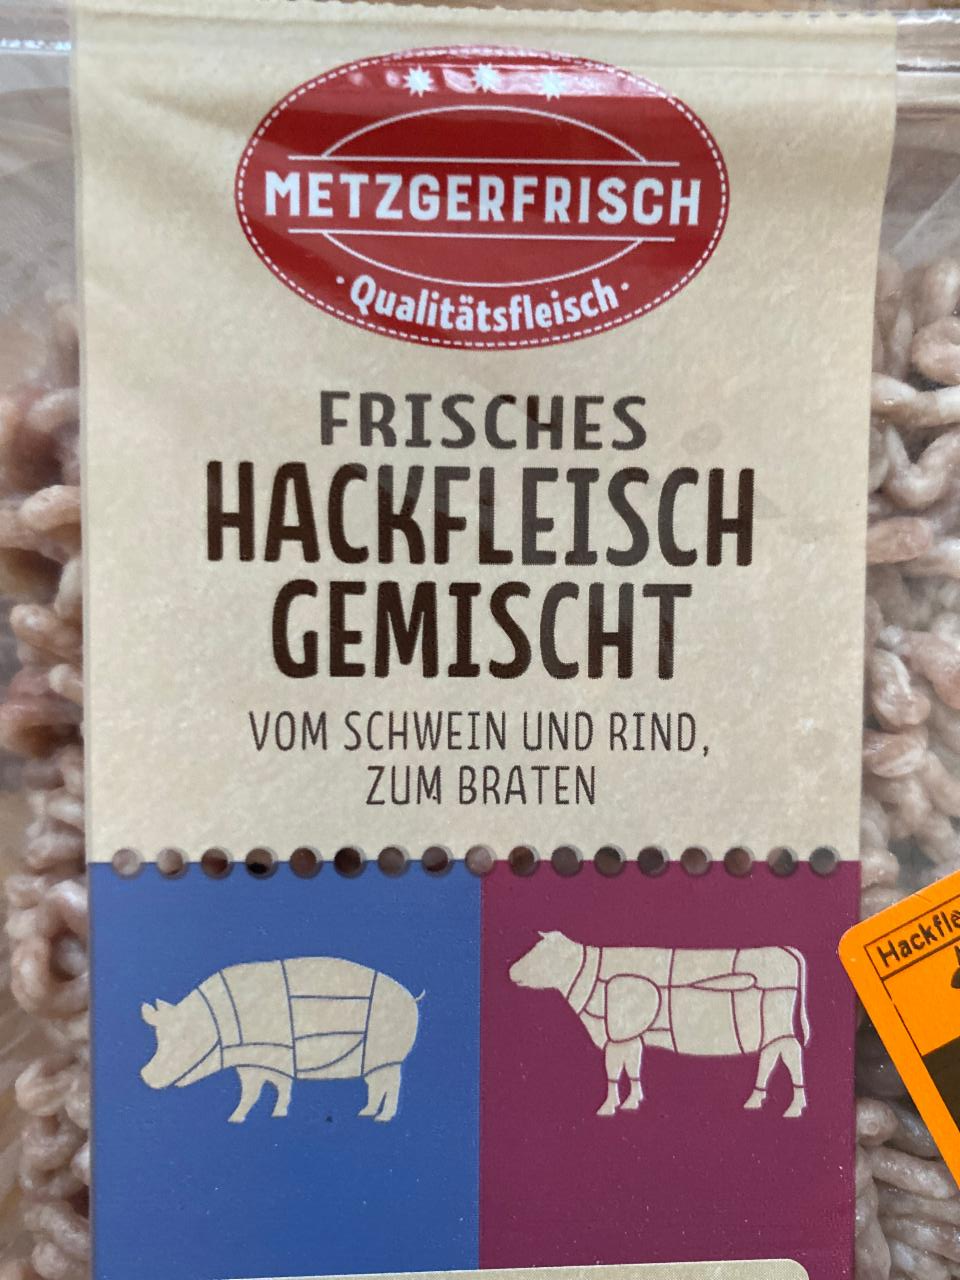 Frisches Hackfleisch Gemischt vom kalorie, a - nutriční und hodnoty Rind kJ braten zum Schwein Metzgerfrisch